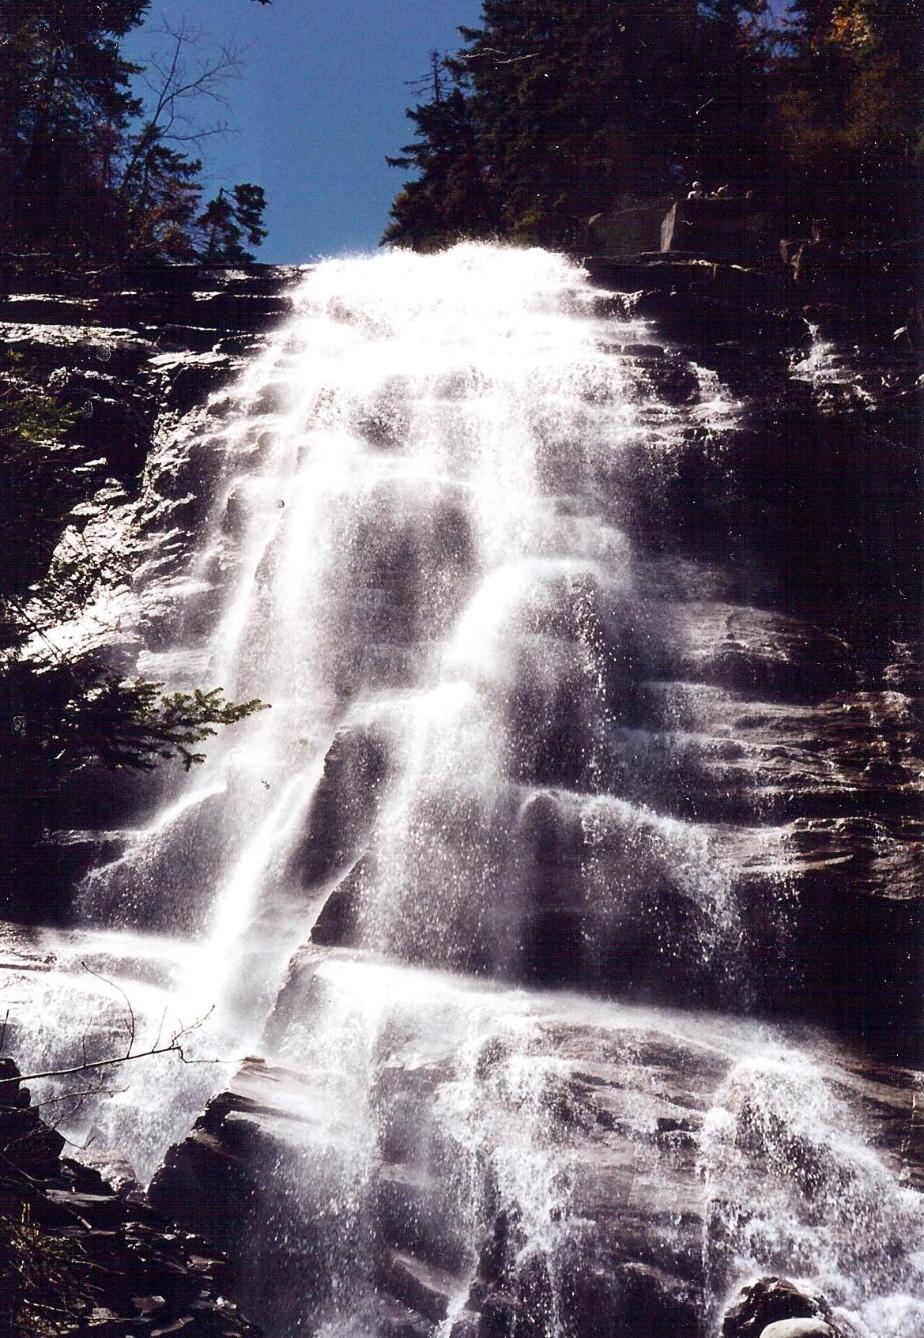 Arethusa Falls, Crawford Notch